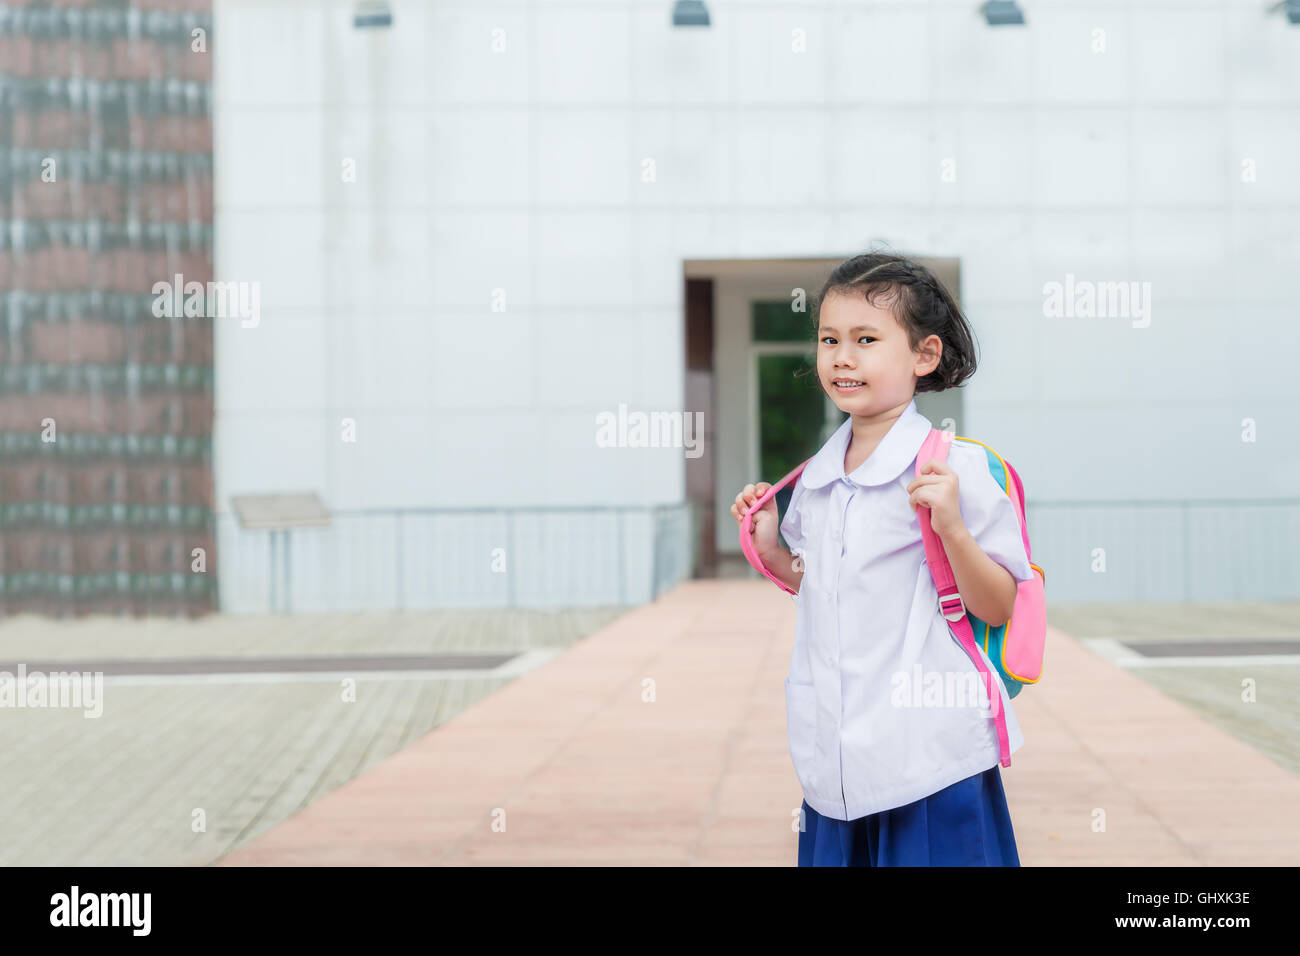 Asian girl kid élève en uniforme à l'école. Retour à l'école des élèves concept. Banque D'Images